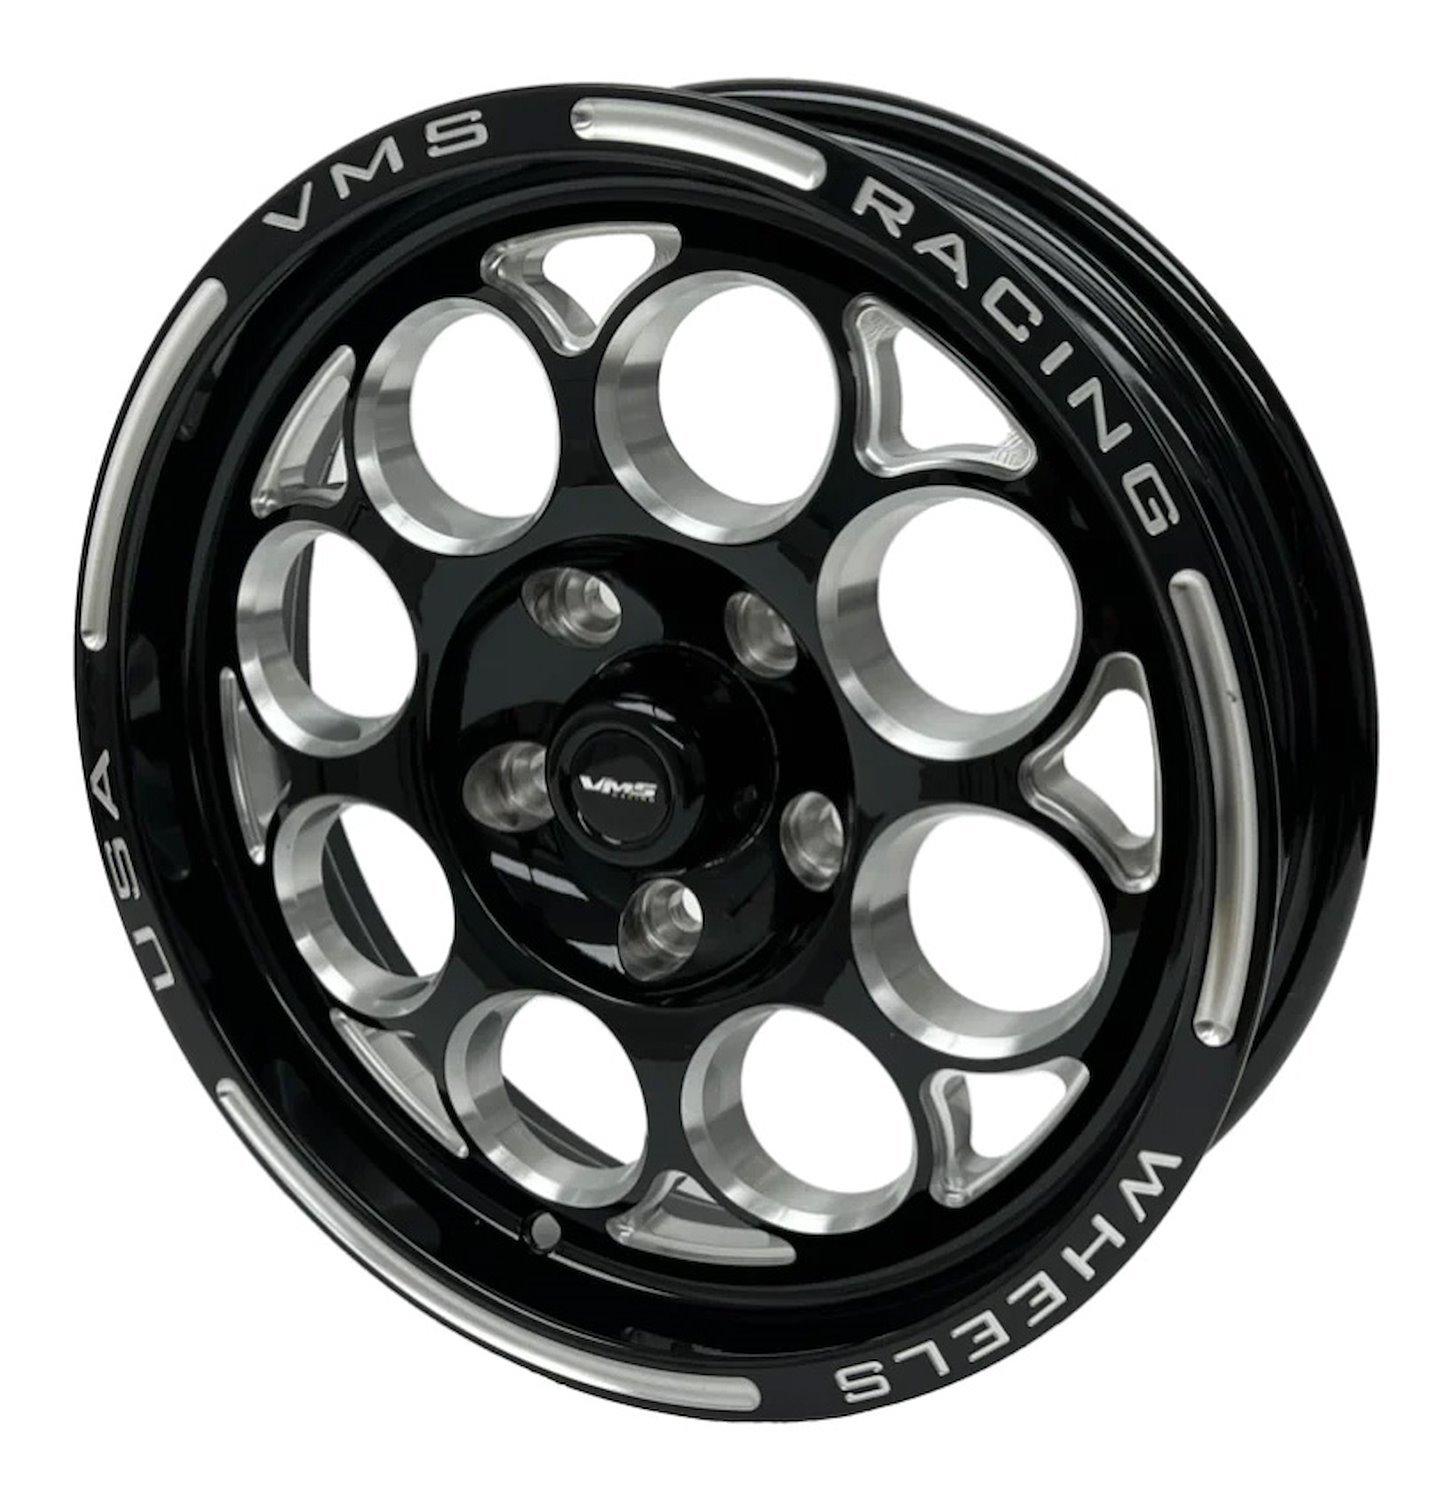 VWMO012 Modulo Wheel, Size: 15" x 3.5", Bolt Pattern: 5 x 4 3/4" (120.65 mm) [Finish: Gloss Black Milled]